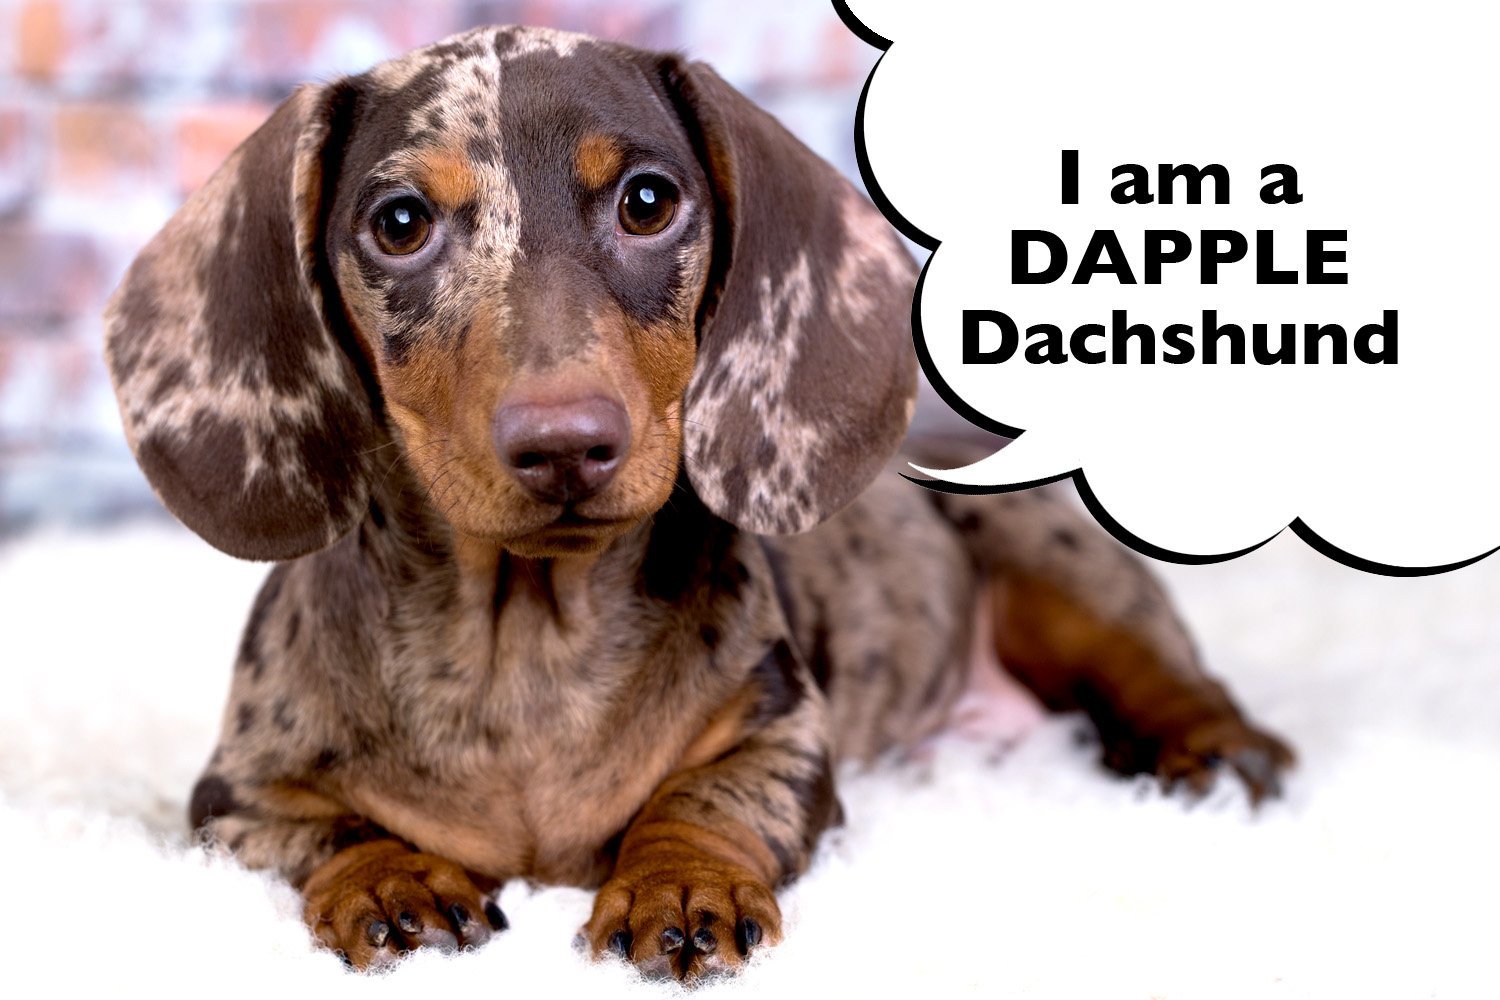 What Is A Dapple Dachshund? - I Love Dachshunds